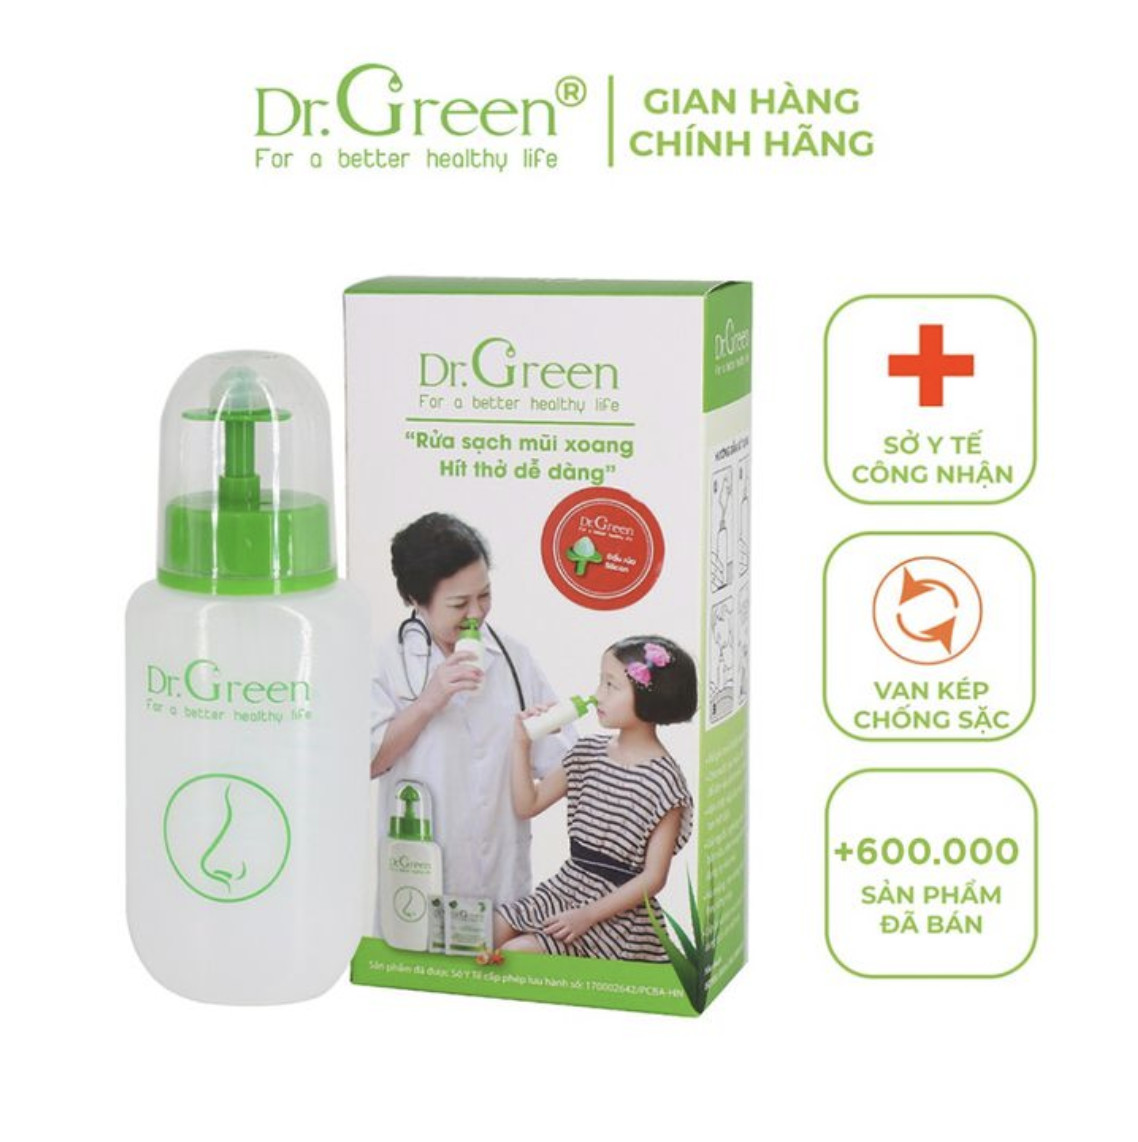 Hướng dẫn sử dụng bình rửa mũi chính hãng Dr.Green